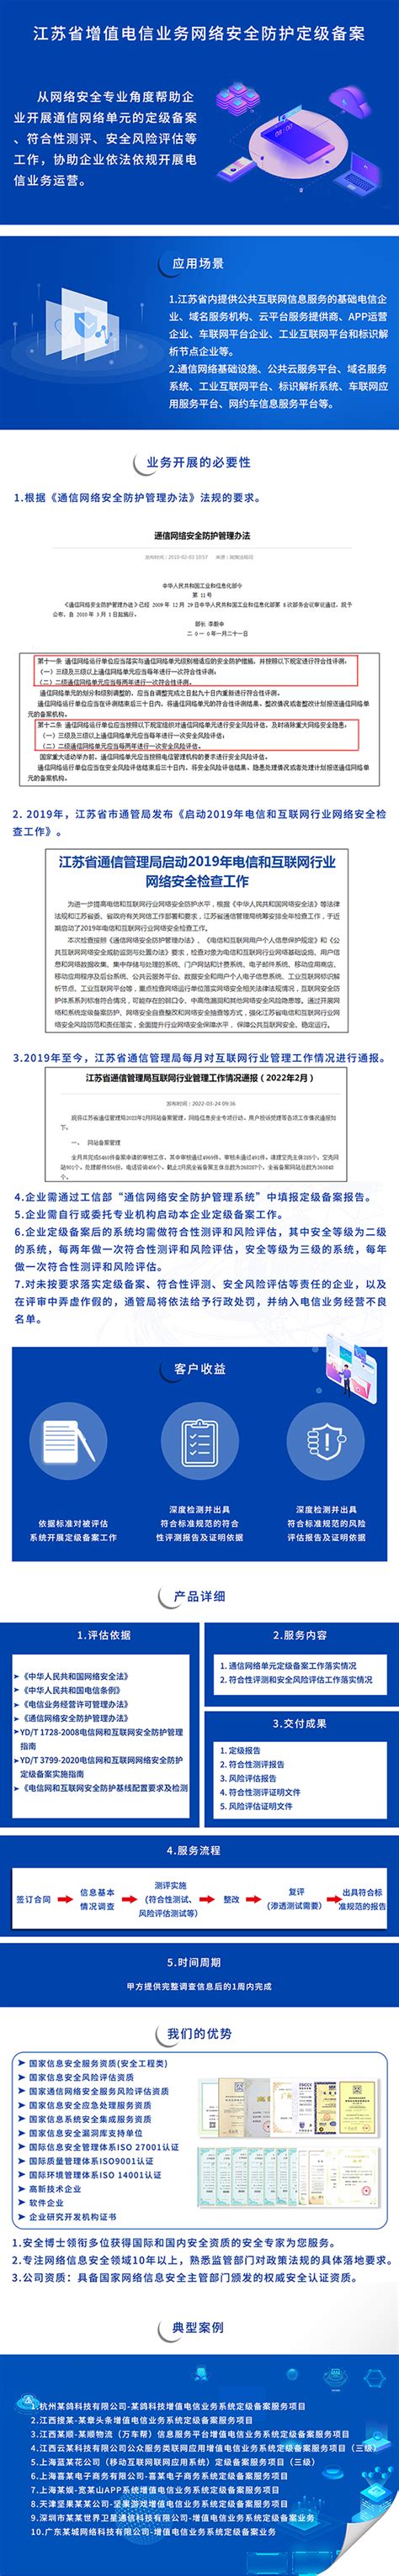 江苏省增值电信业务网络安全防护定级备案